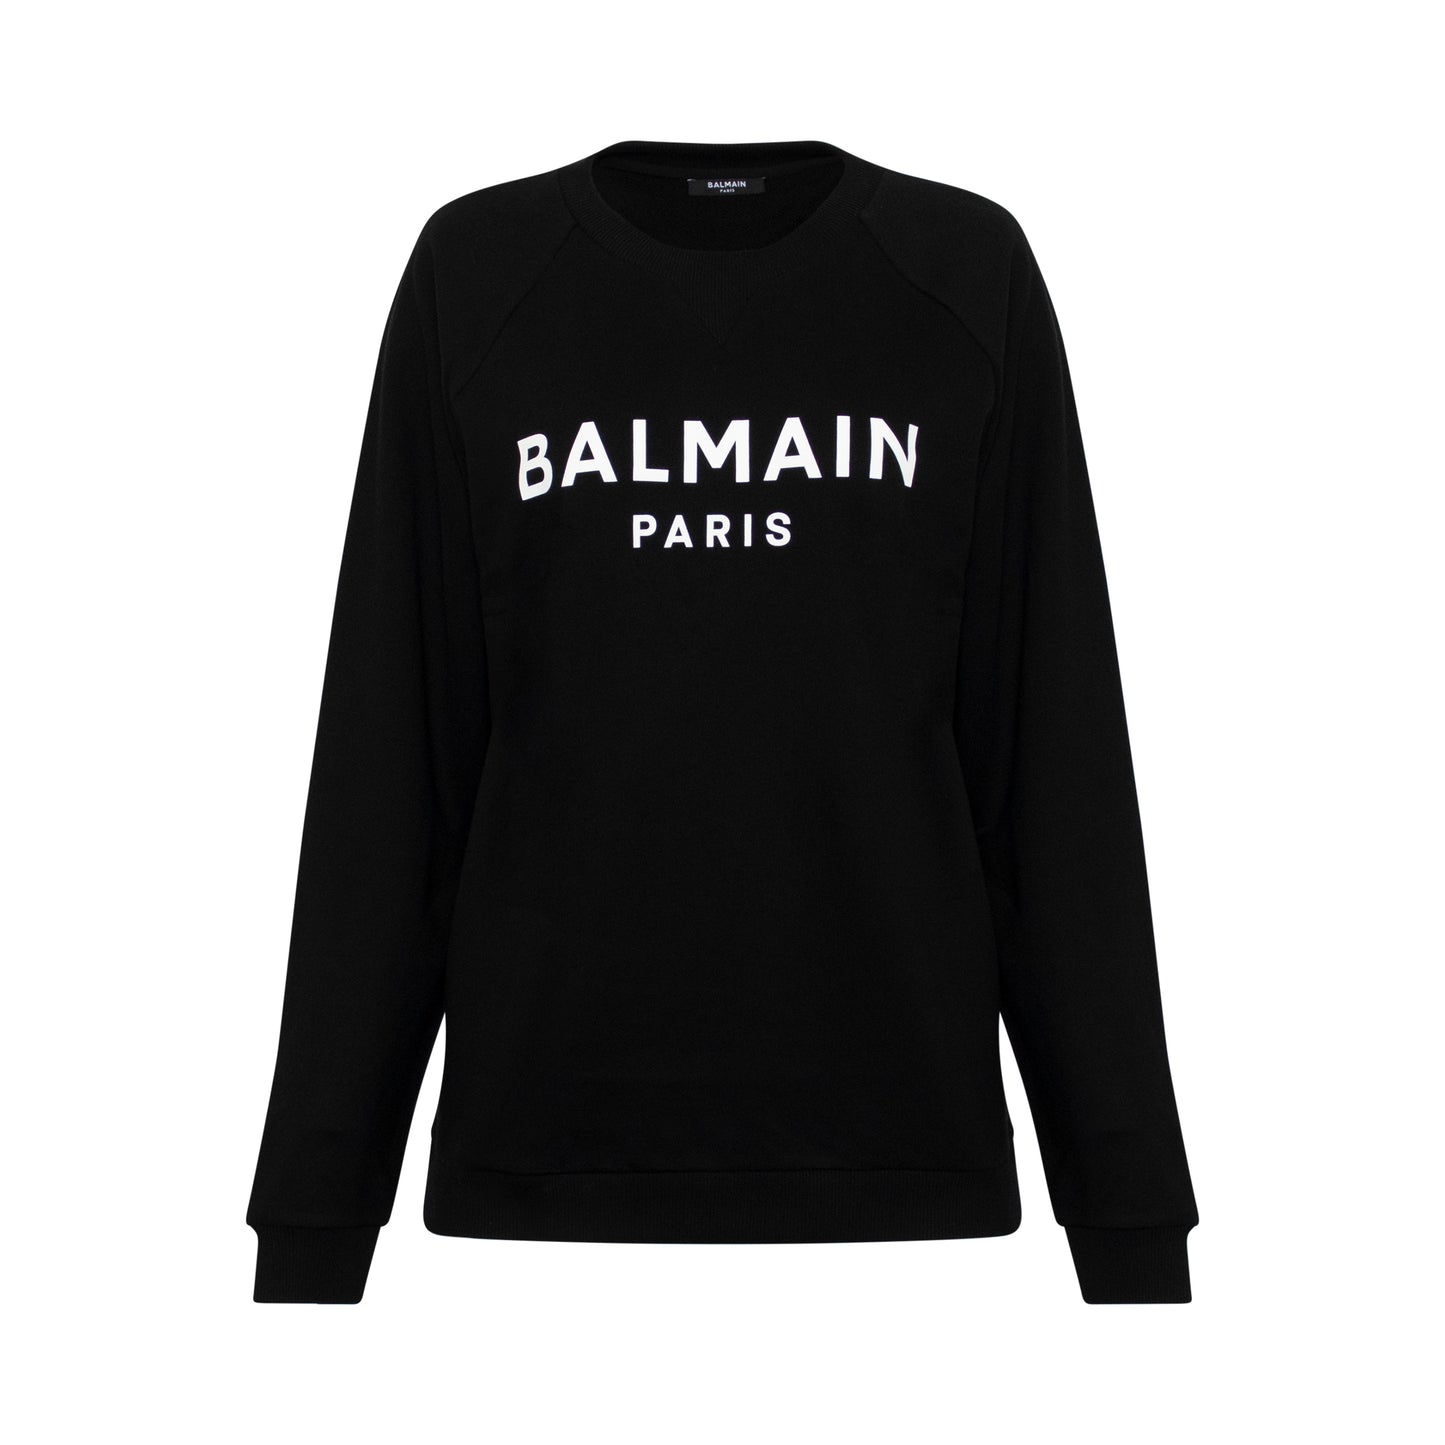 Balmain Printed Logo Sweatshirts in Black/White